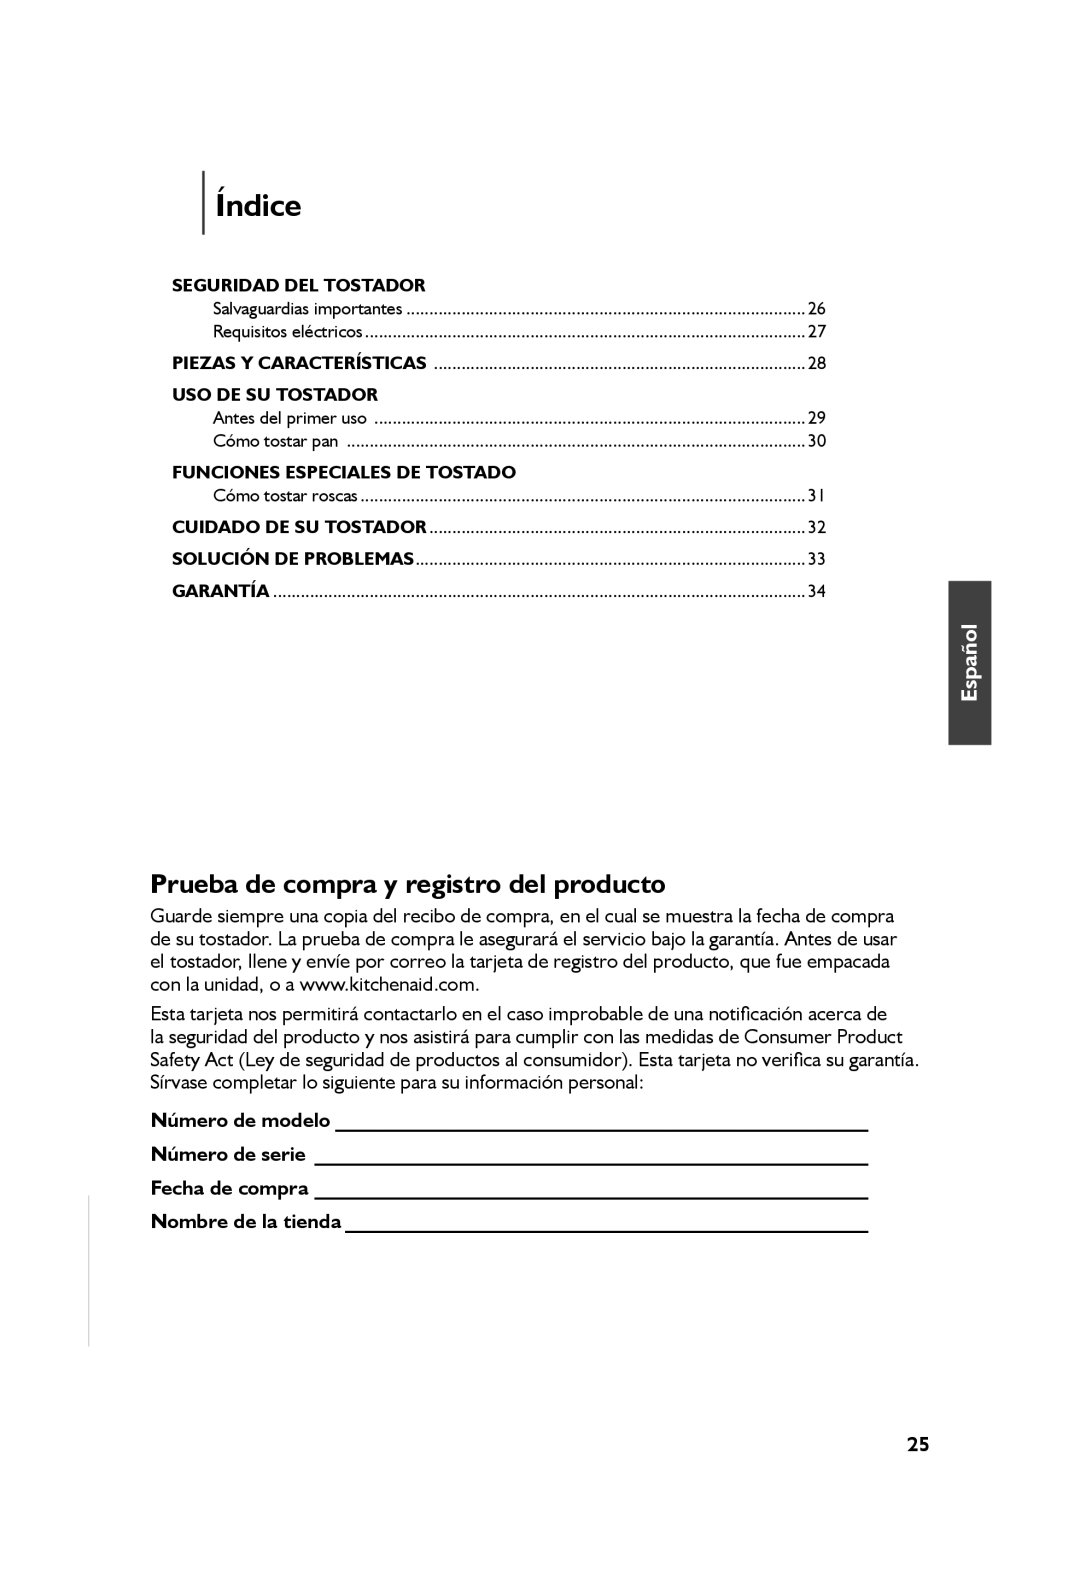 KitchenAid KMT2115, KMT4115 manual Índice, Prueba de compra y registro del producto, Español 